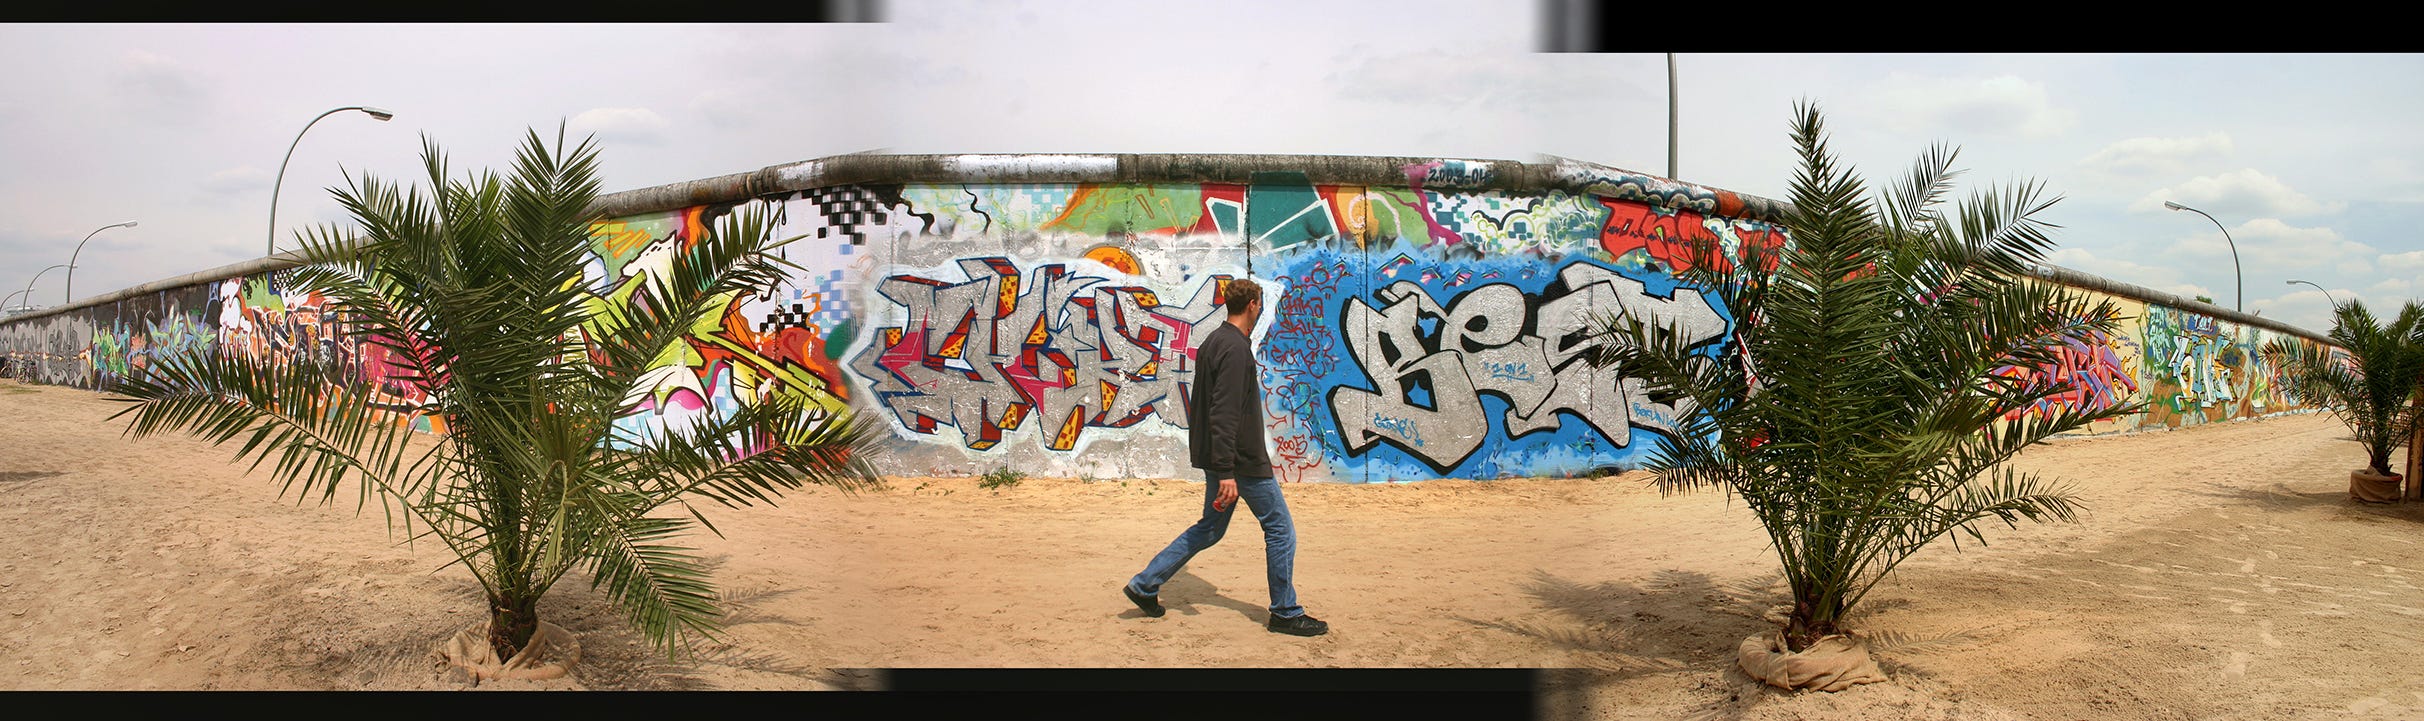 Air Graffiti Wall: The Advanced Digital Graffiti Station - Foto Master